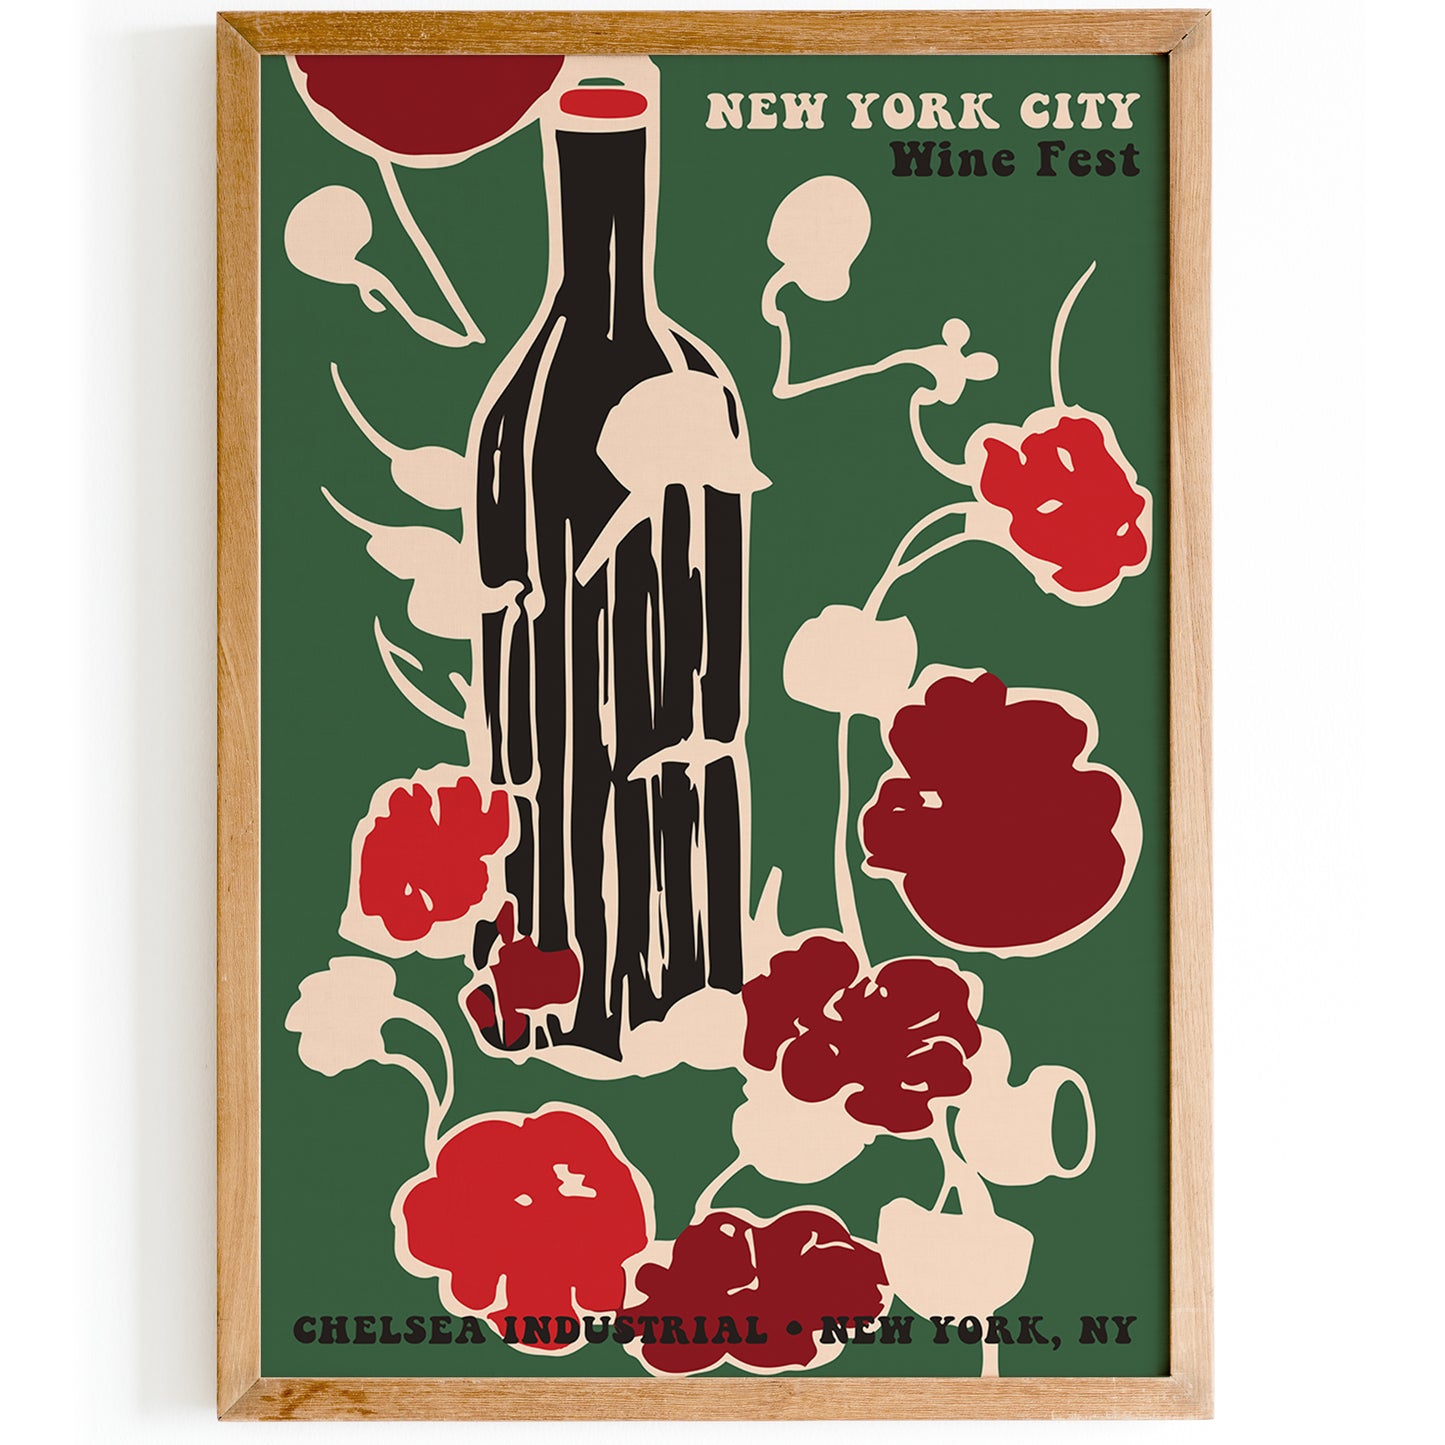 New York City Wine Fest Poster